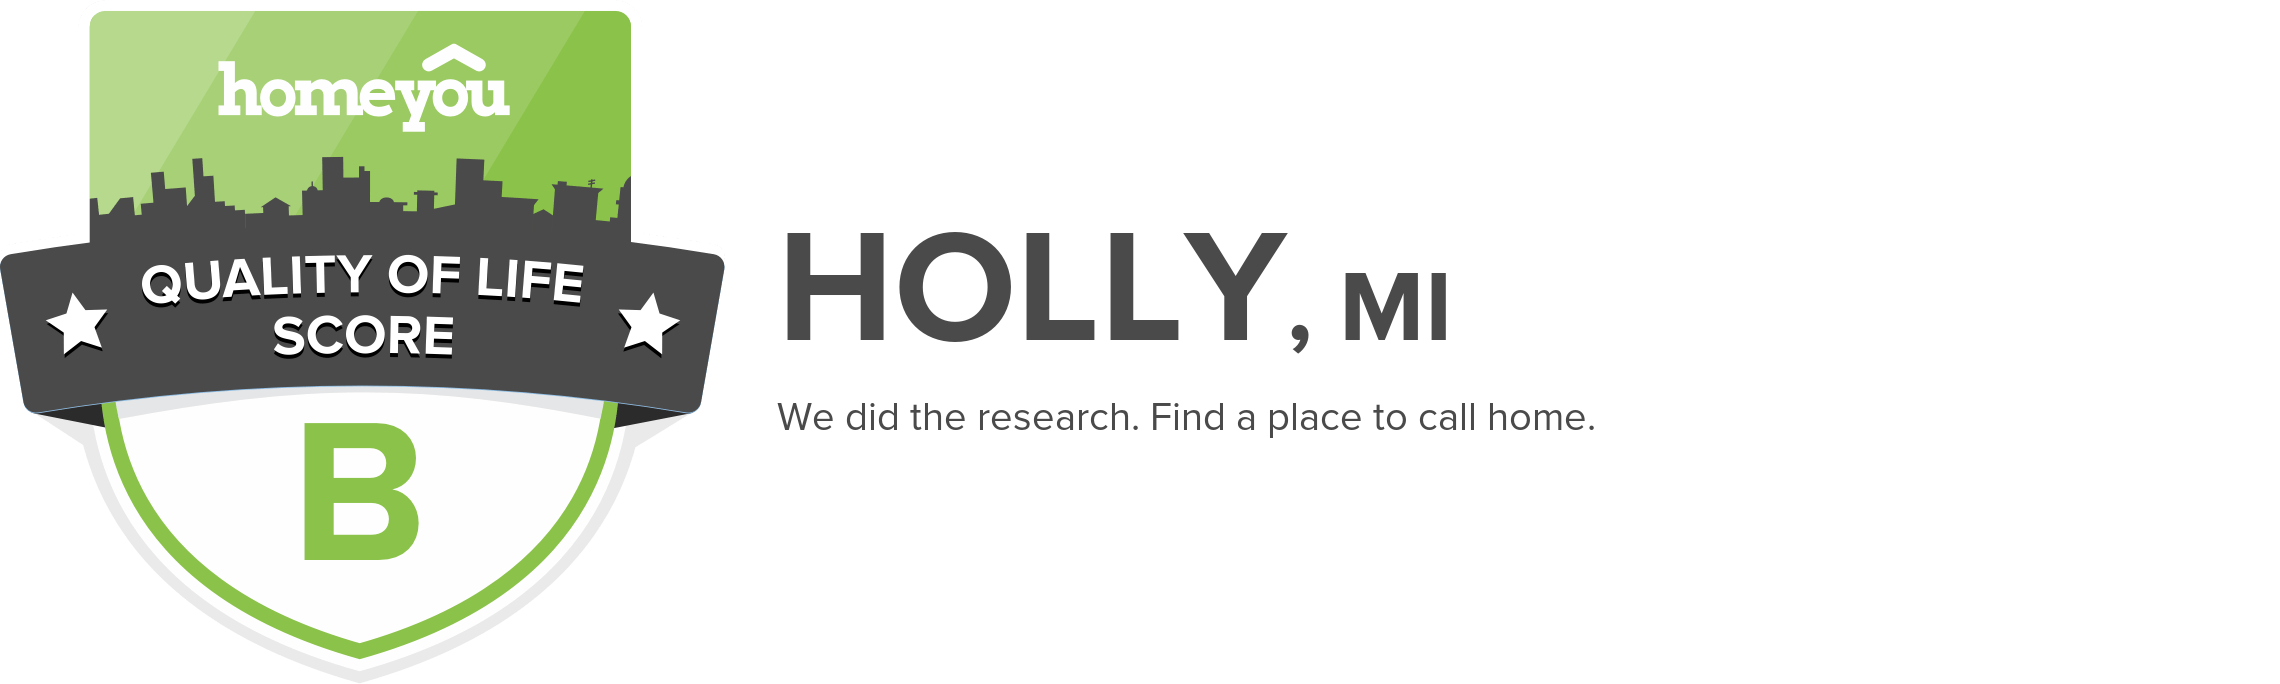 Holly, MI